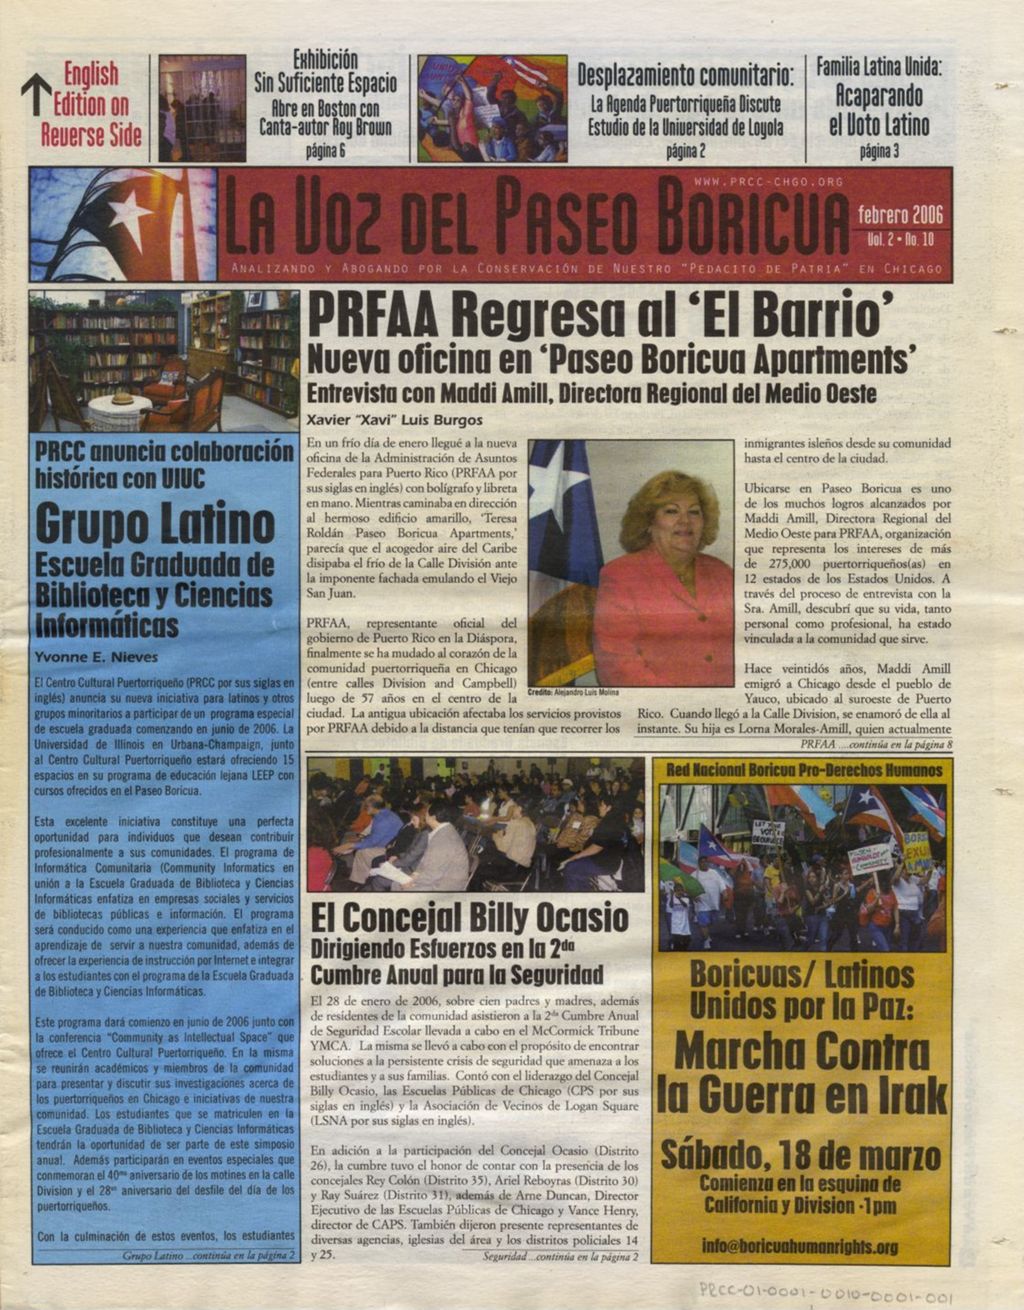 Miniature of La Voz del Paseo Boricua; February 2006; vol. 2, no. 10  (Spanish and English covers)